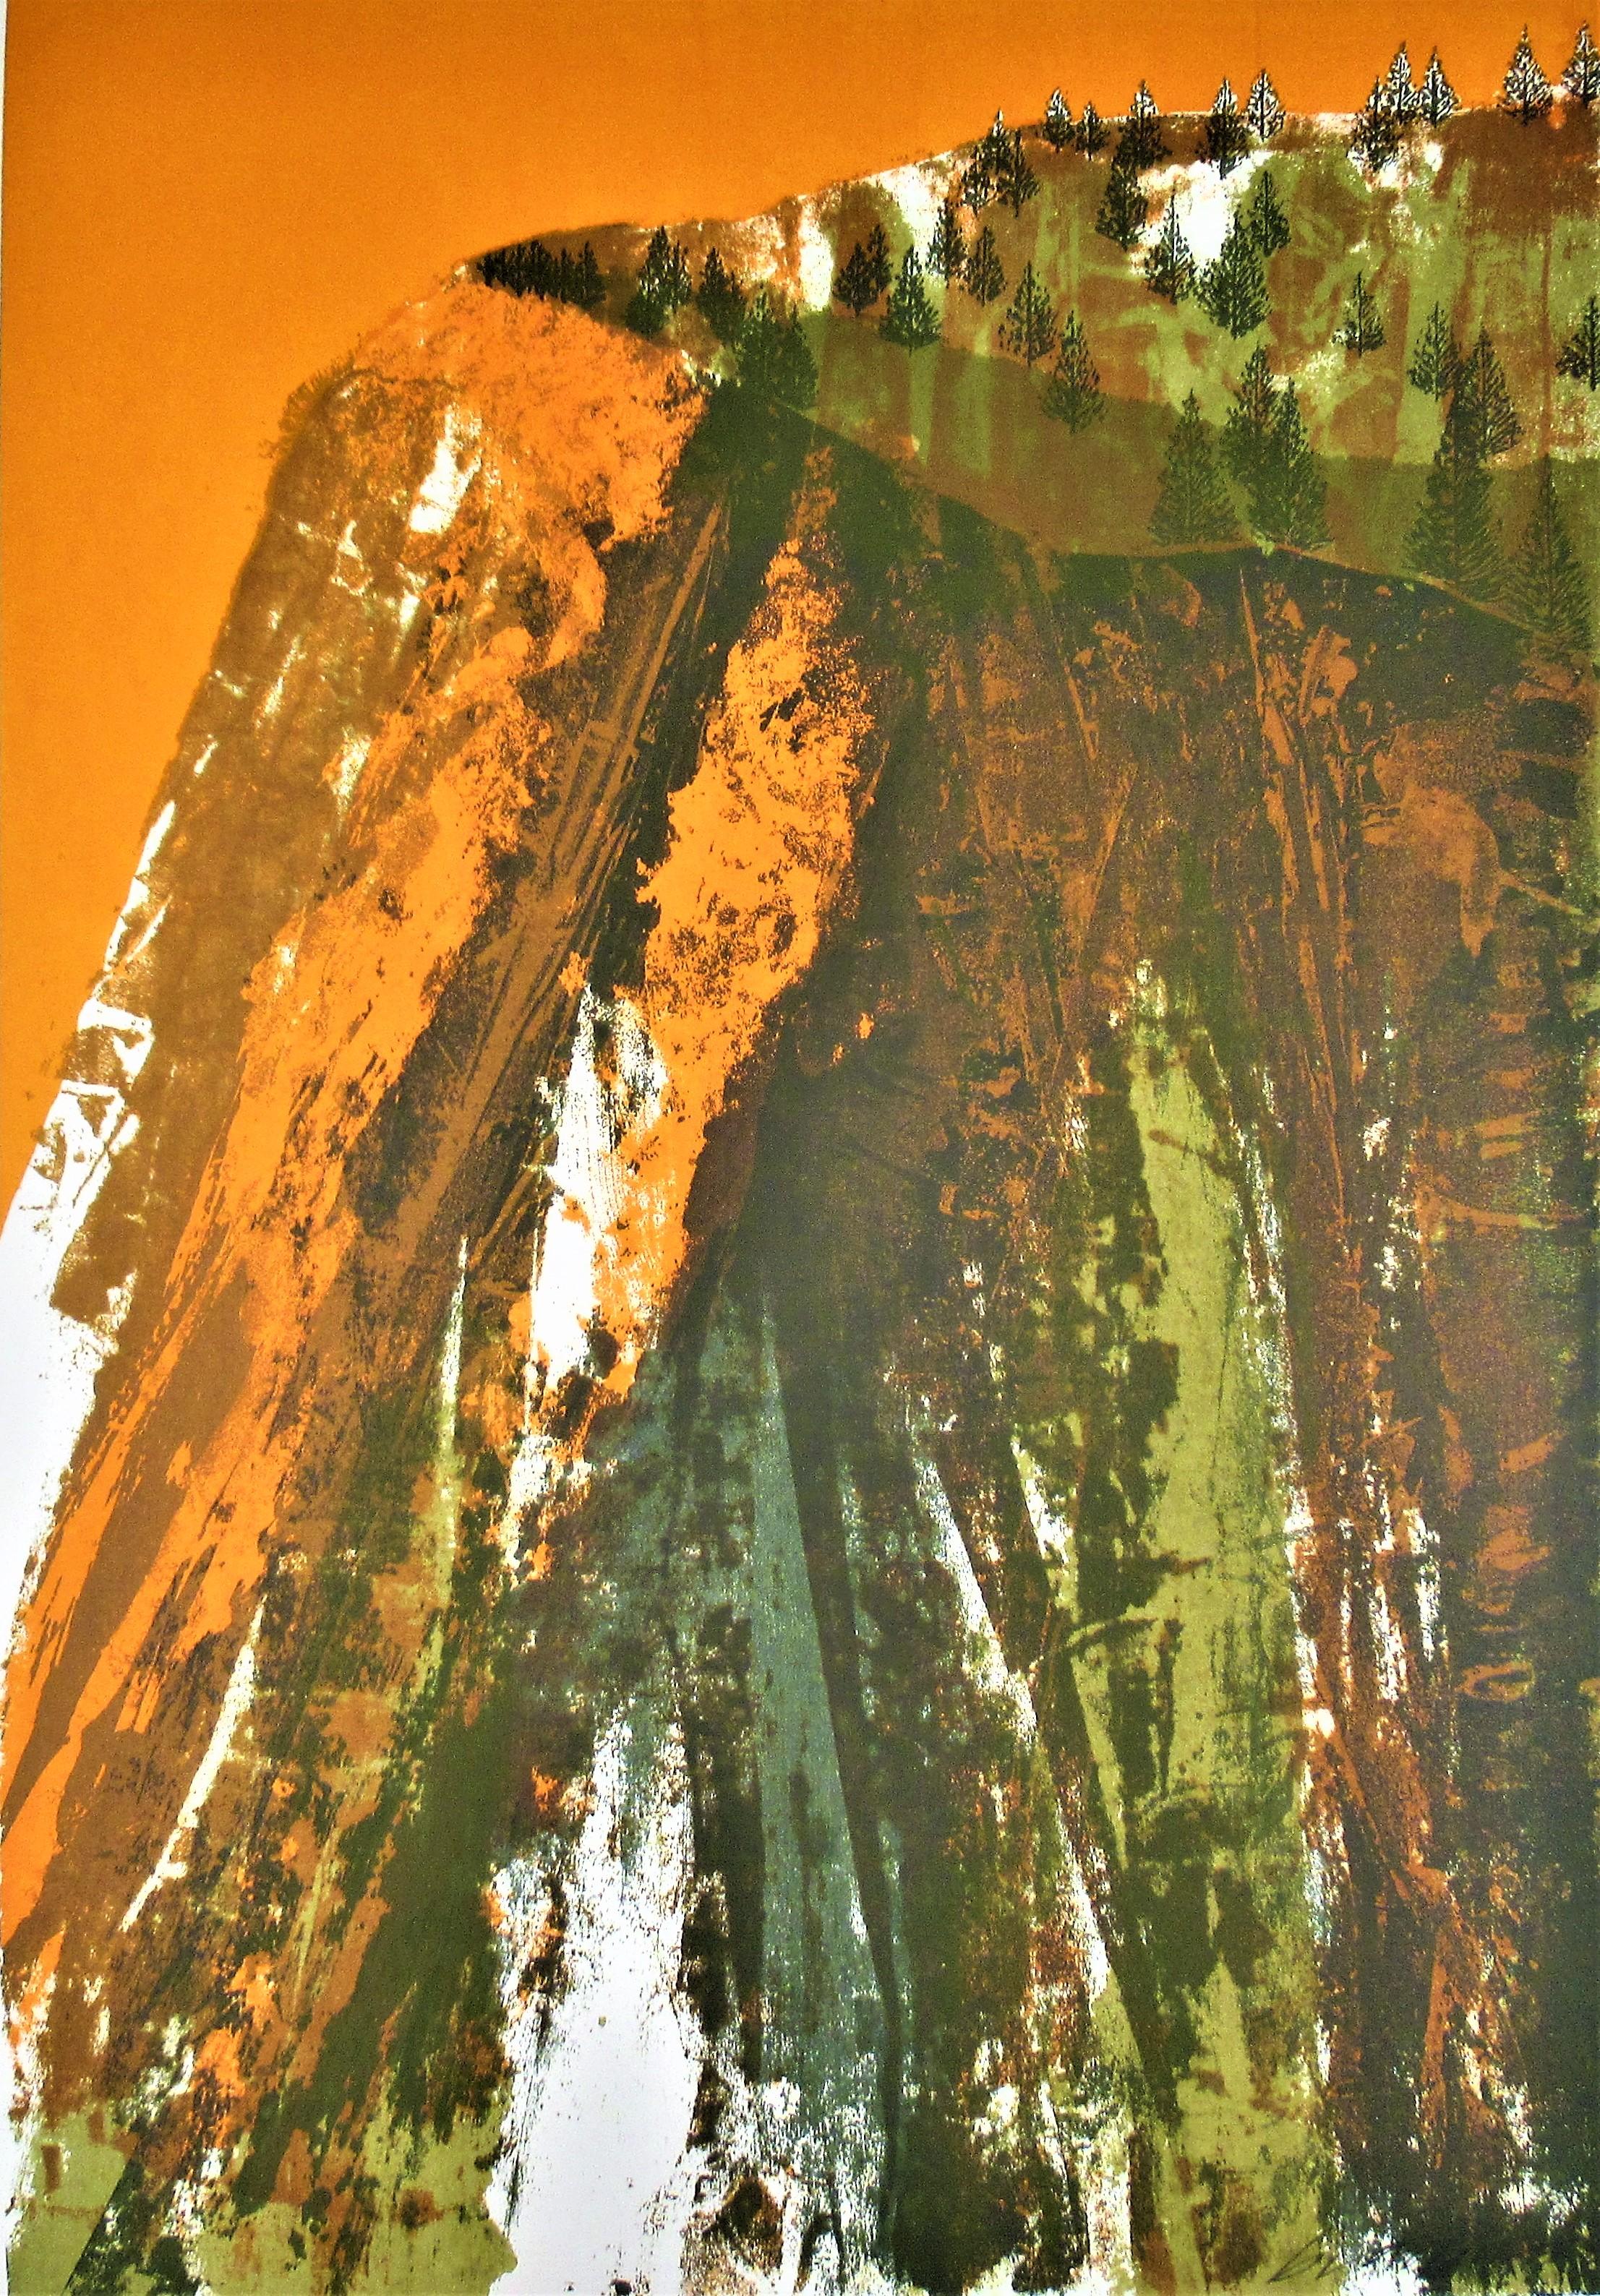 Howard Bradford Abstract Print - "Canyon Wall #2" Large color serigraph